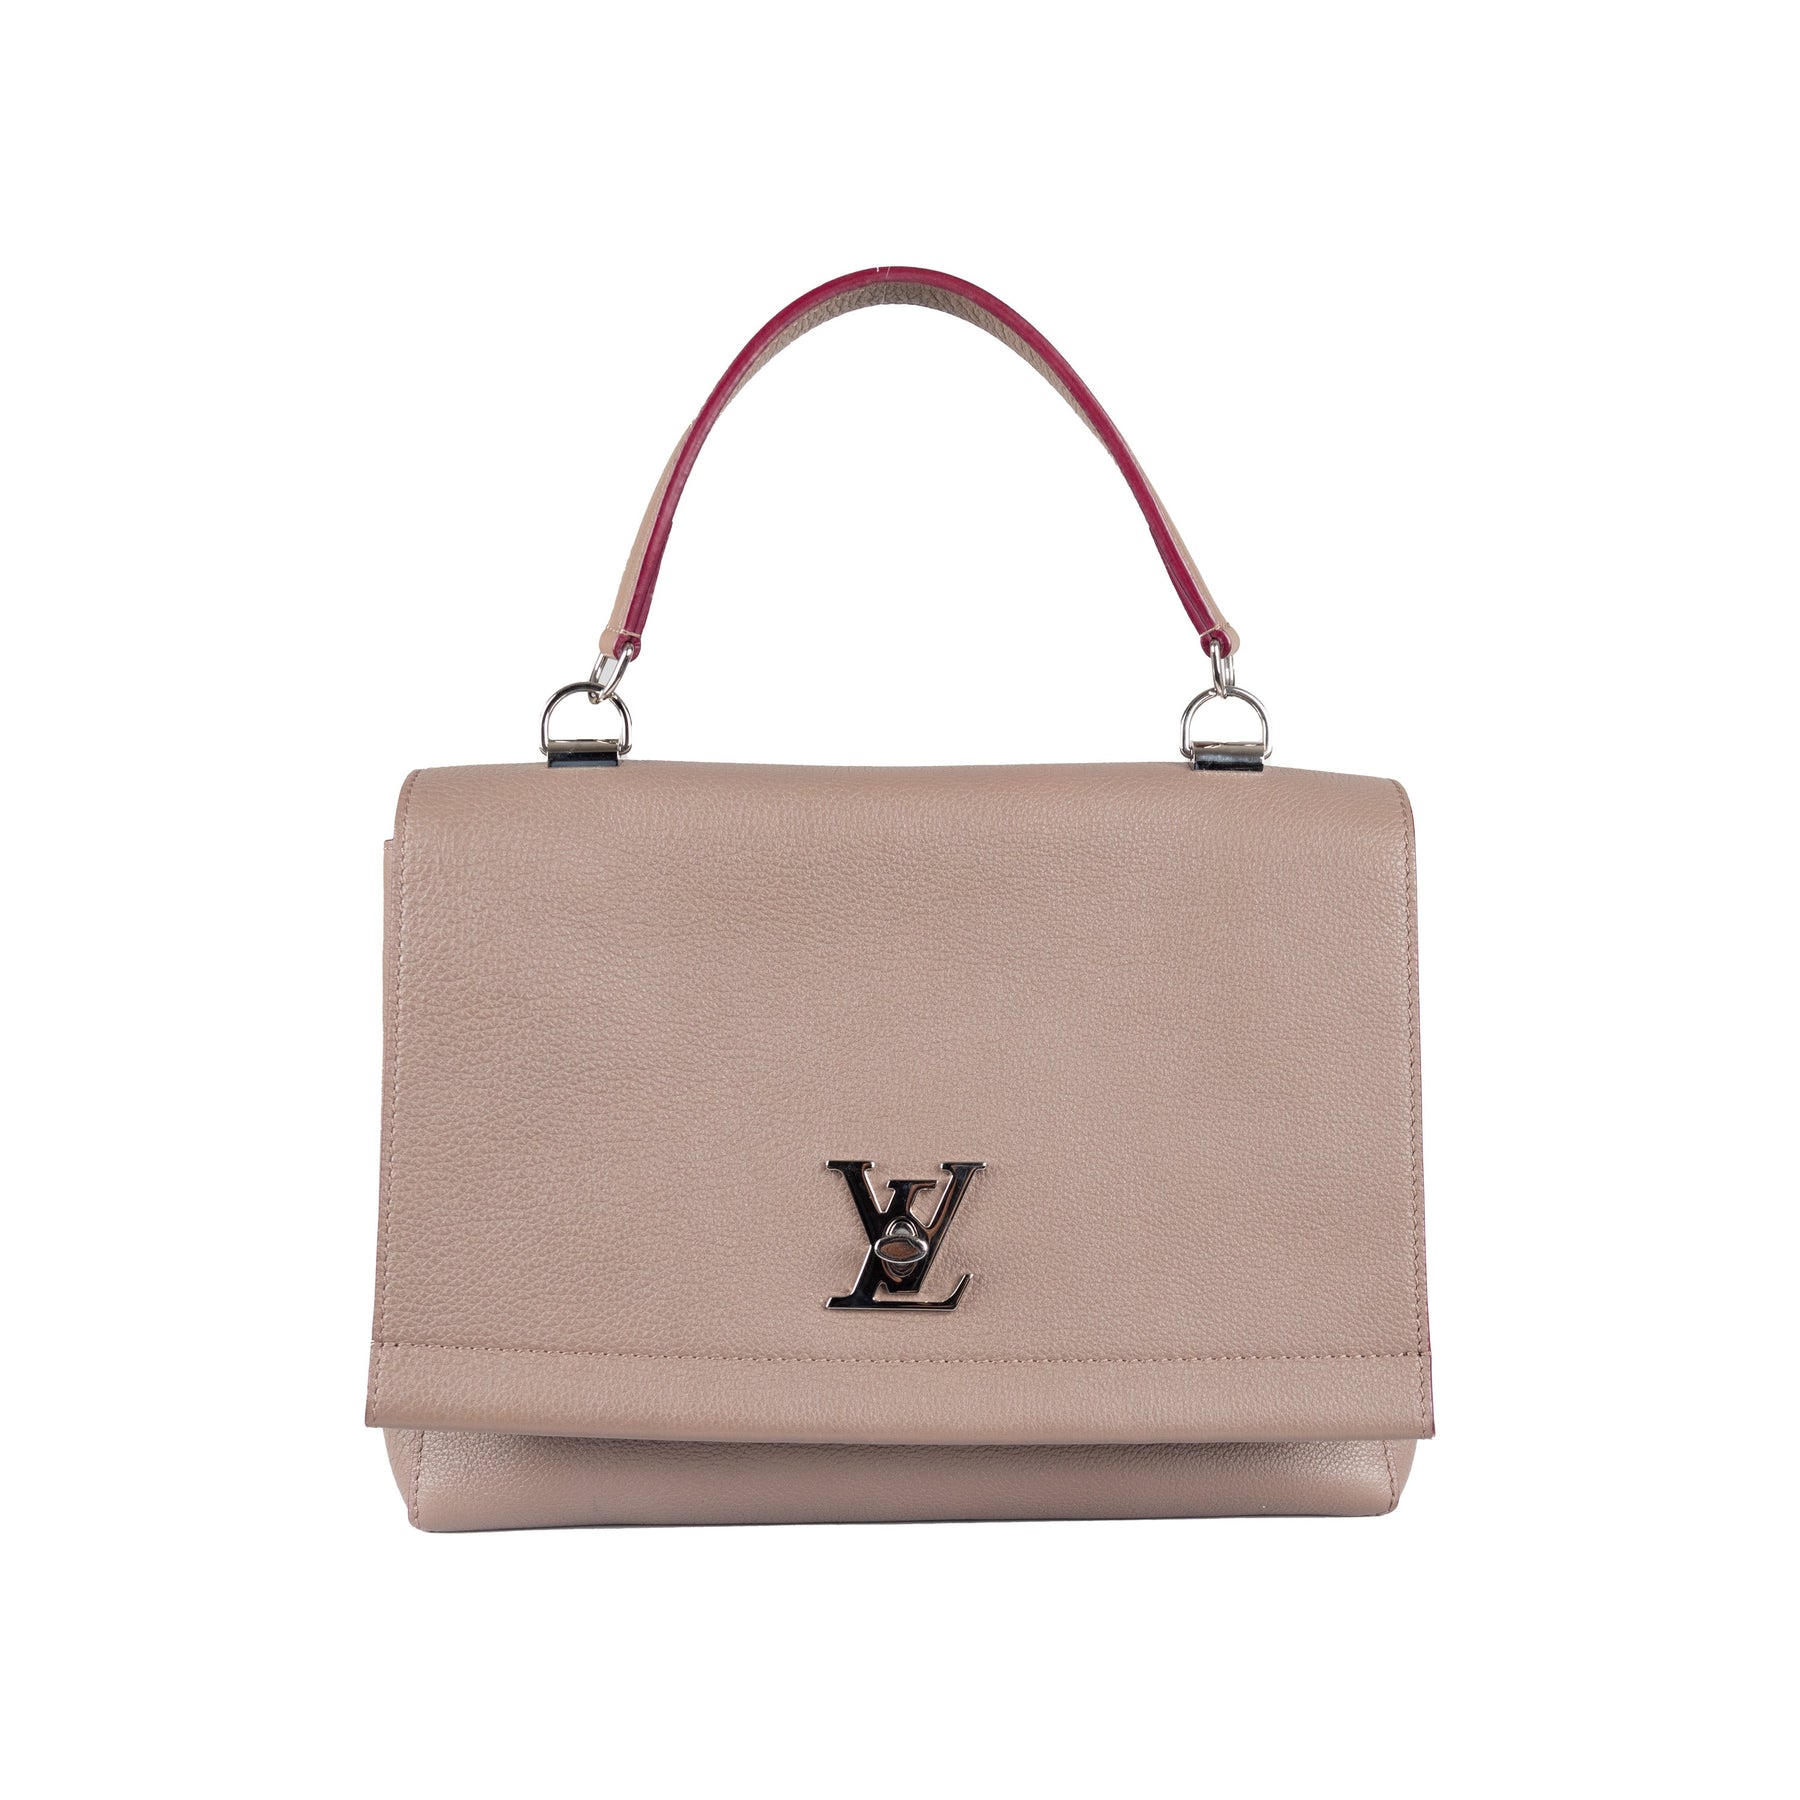 tronchetti luis Vuitton originali vintage - Abbigliamento e